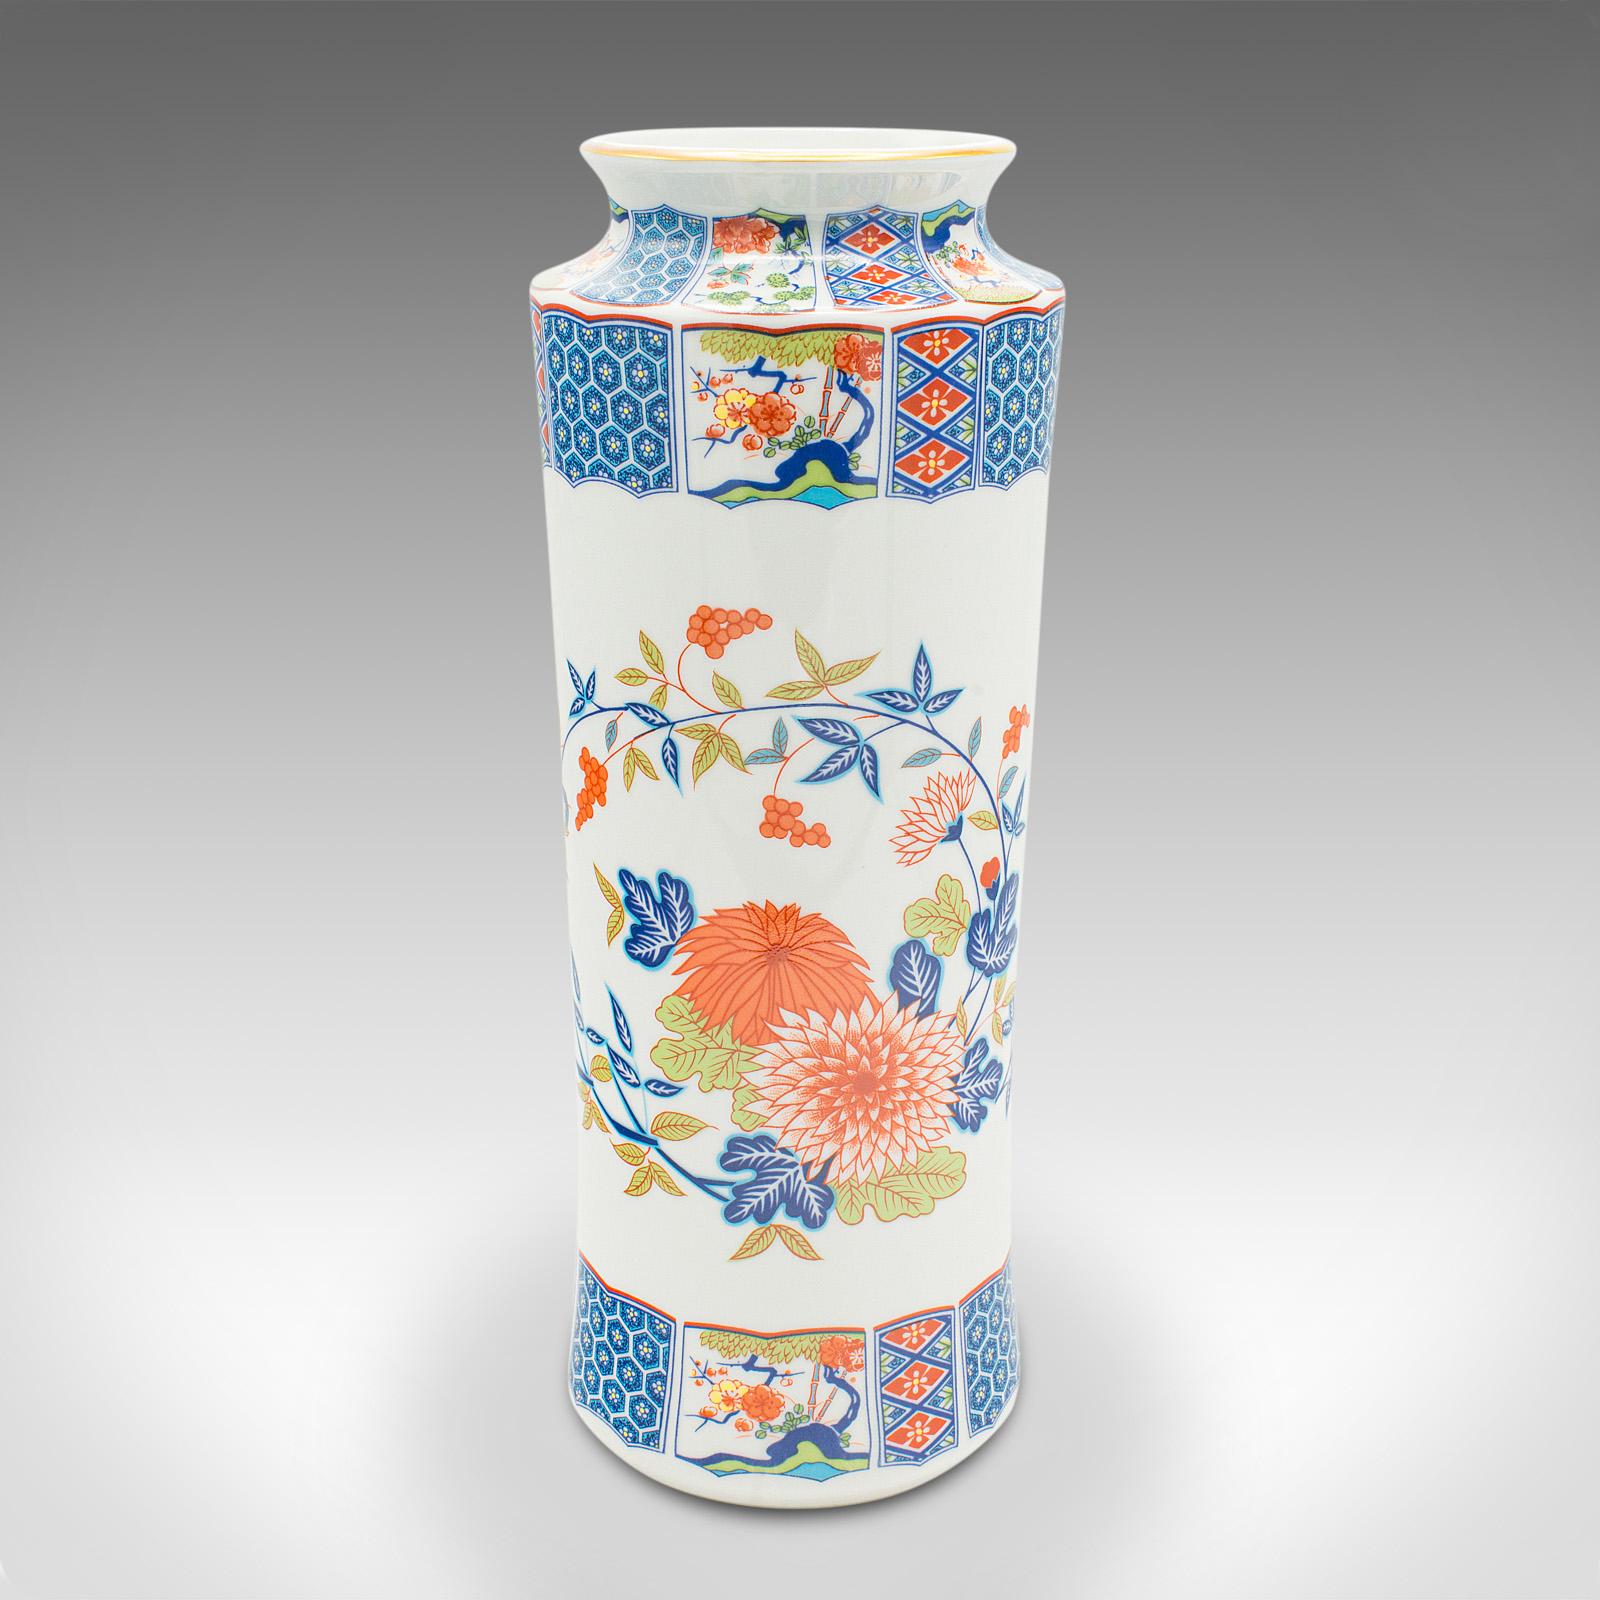 Dies ist eine dekorative Vintage-Stielvase. Eine chinesische, keramische Blumenmanschette im Art-Déco-Stil, aus dem späten 20. Jahrhundert, um 1980.

Präsentiert sich schön mit ansprechendem Dekor und Farbe
Mit wünschenswerter Alterspatina und frei